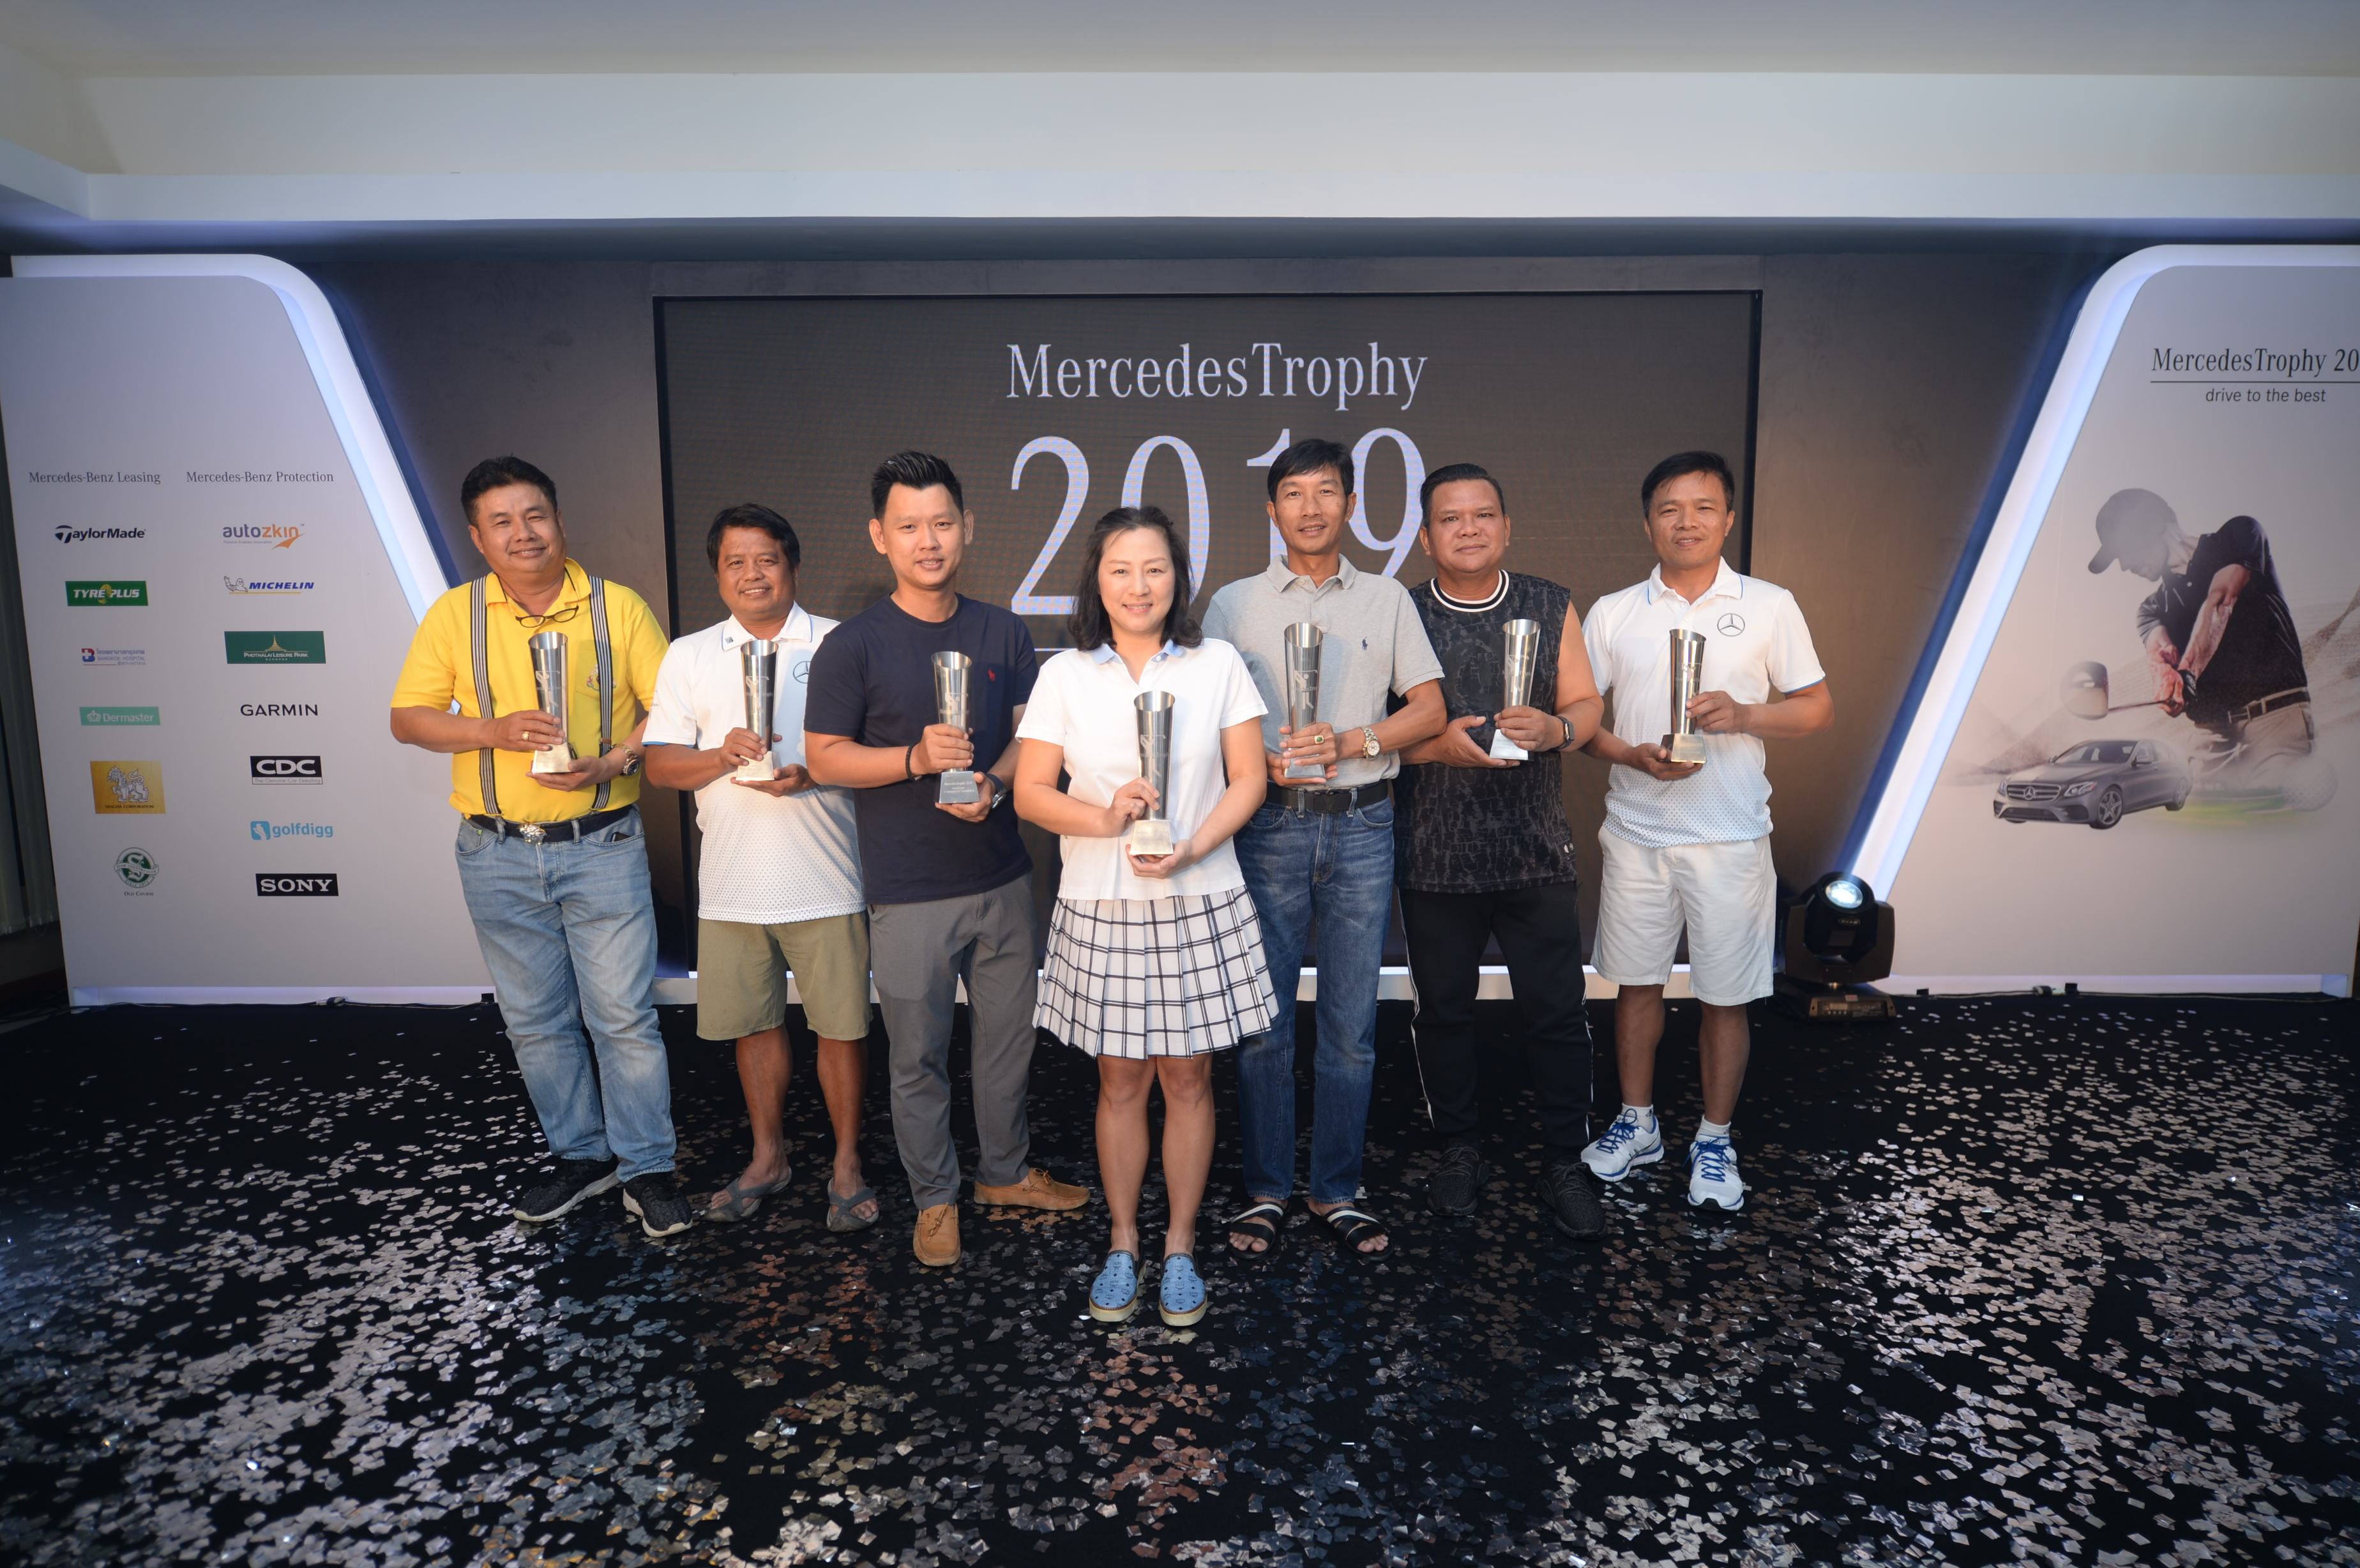 เมอร์เซเดส-เบนซ์ ประกาศผลการแข่งขัน “เมอร์เซเดสโทรฟี่ 2019” เผยรายชื่อ 7 ตัวแทนประเทศไทย ร่วมโชว์ฟอร์มระดับภูมิภาค ณ ประเทศออสเตรเลีย